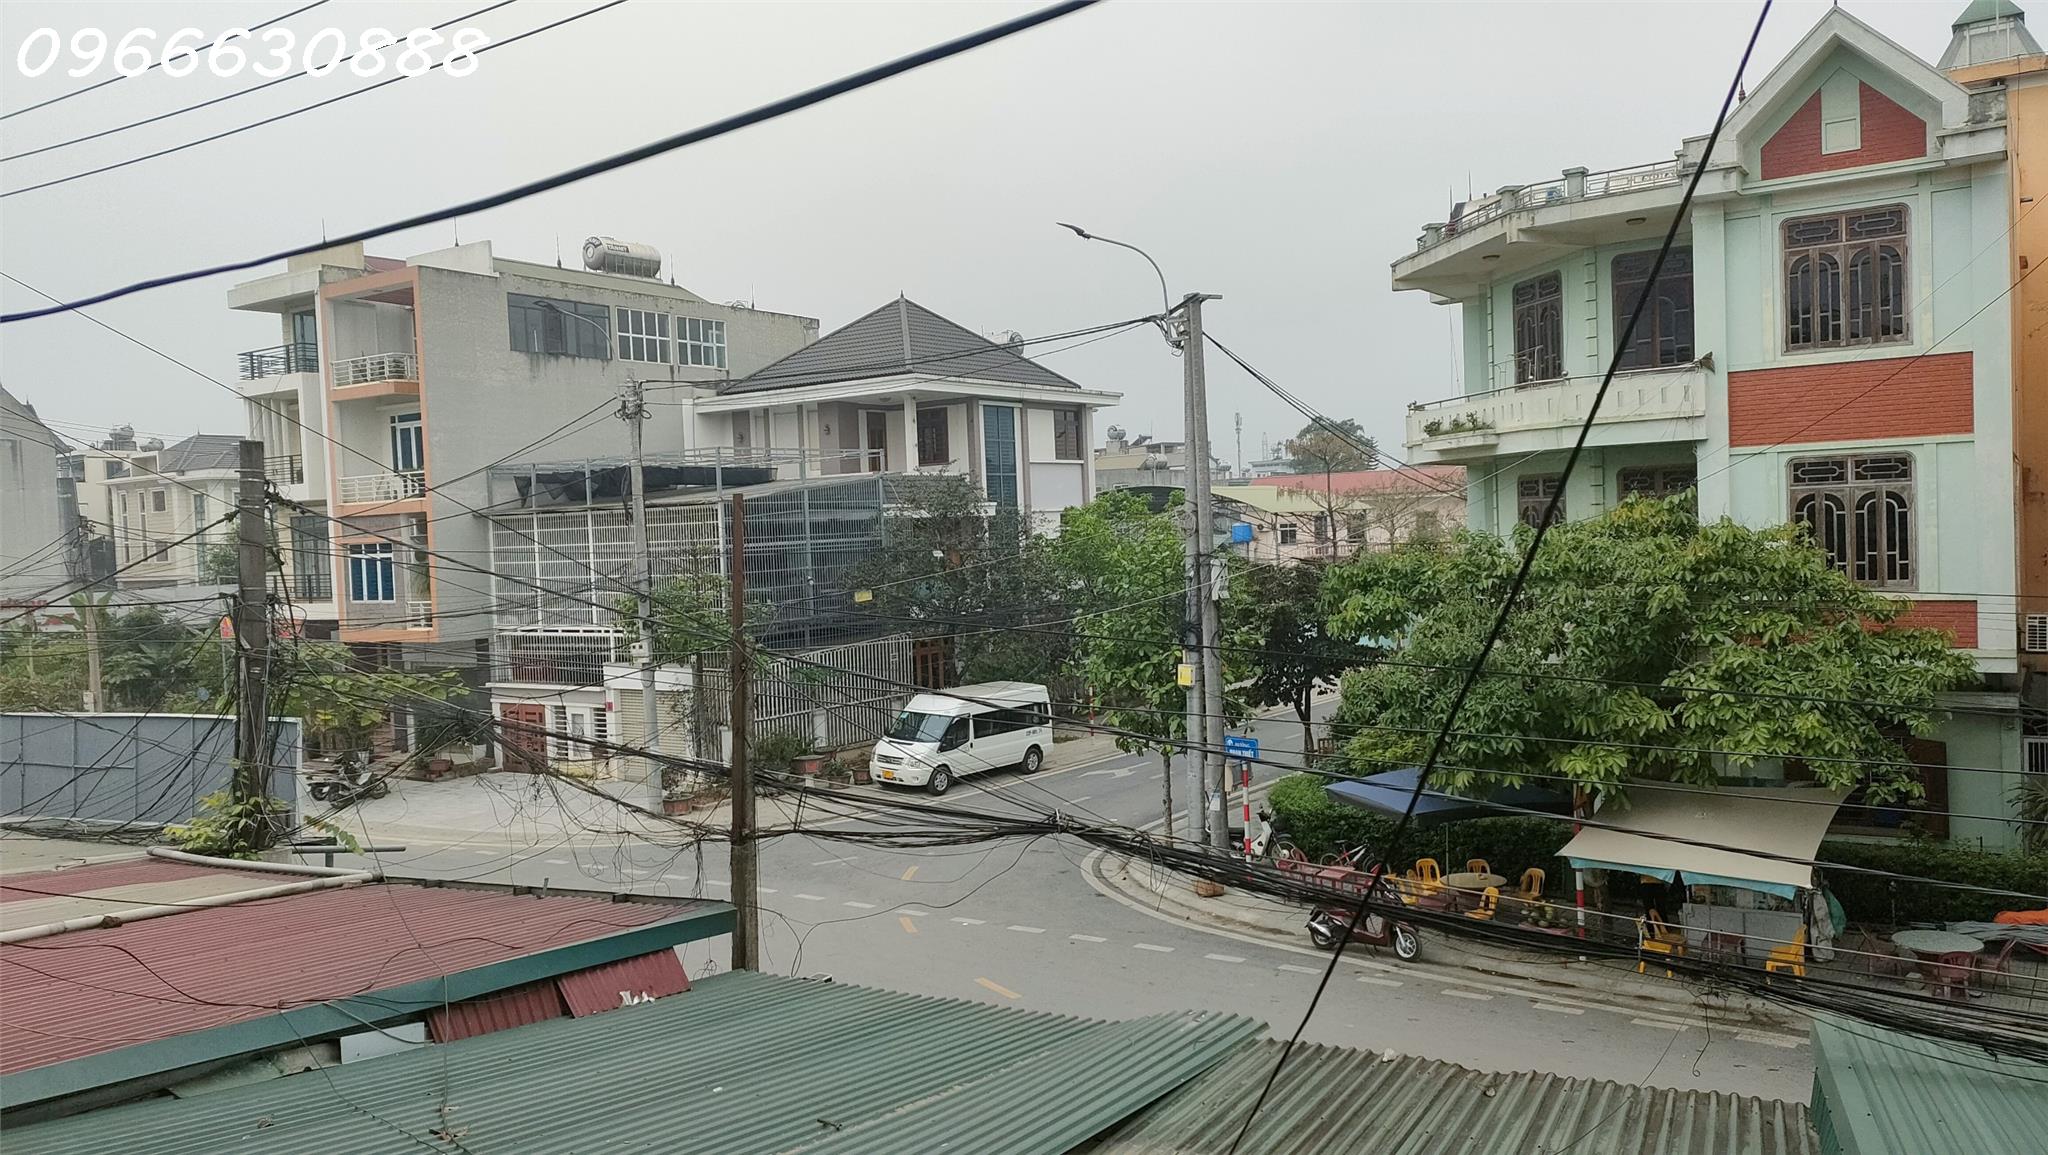 Sở hữu ngôi nhà 2 tầng  tại vị trí đắc địa - Phường Phan Thiết TP Tuyên Quang - Ảnh 1